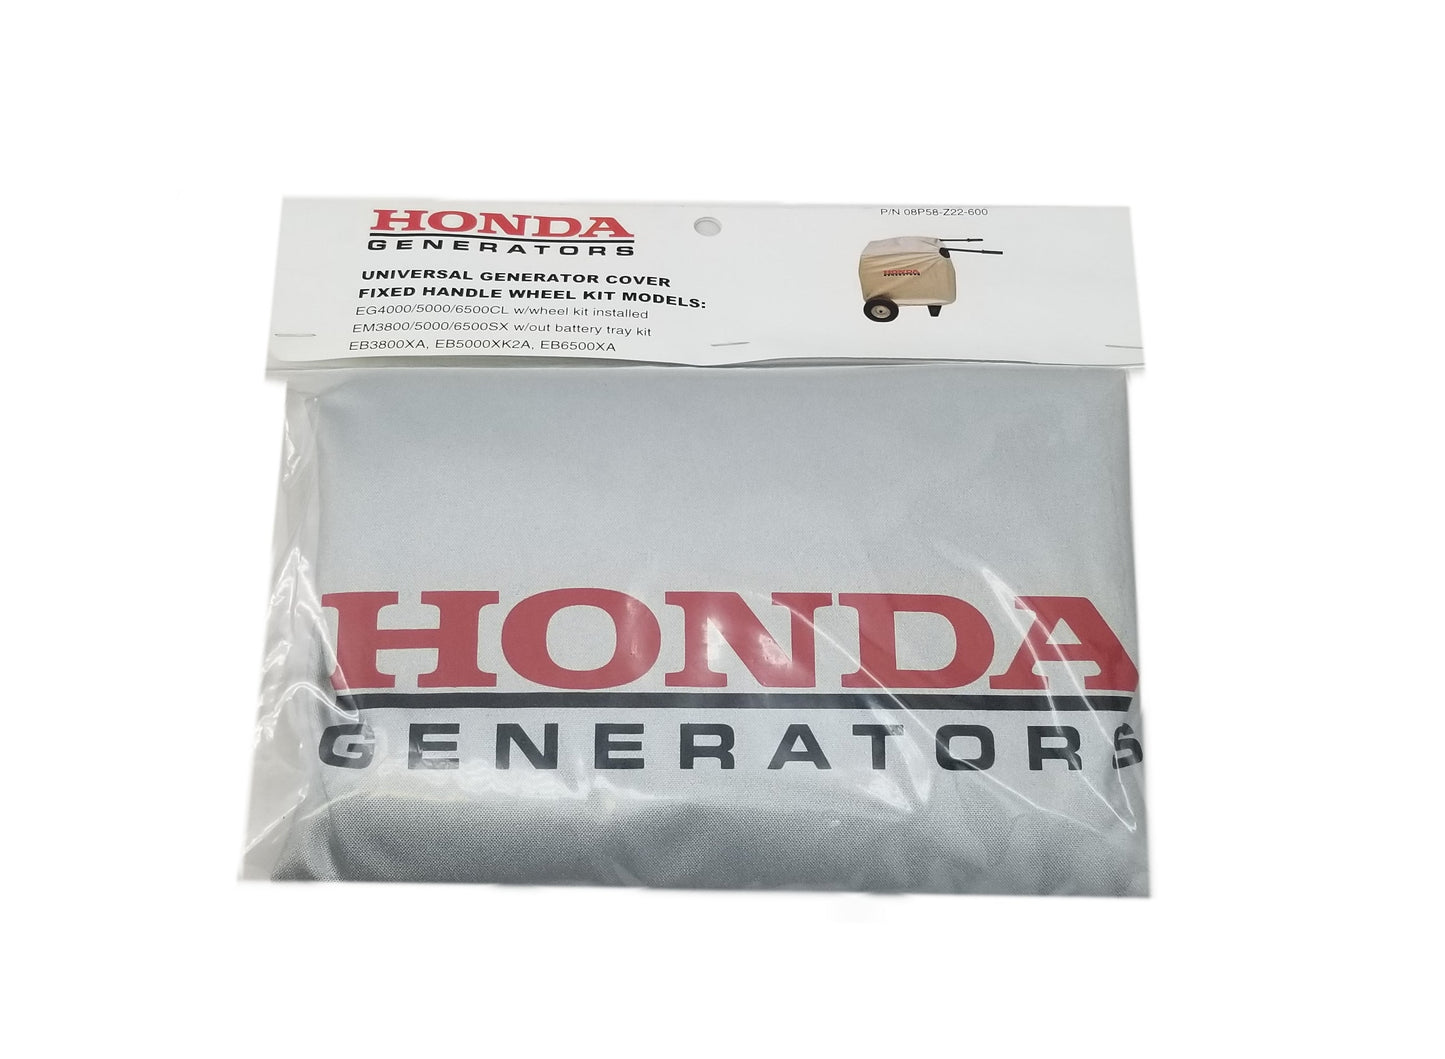 Honda Fixed Handle Generator Cover - 08P58-Z22-600